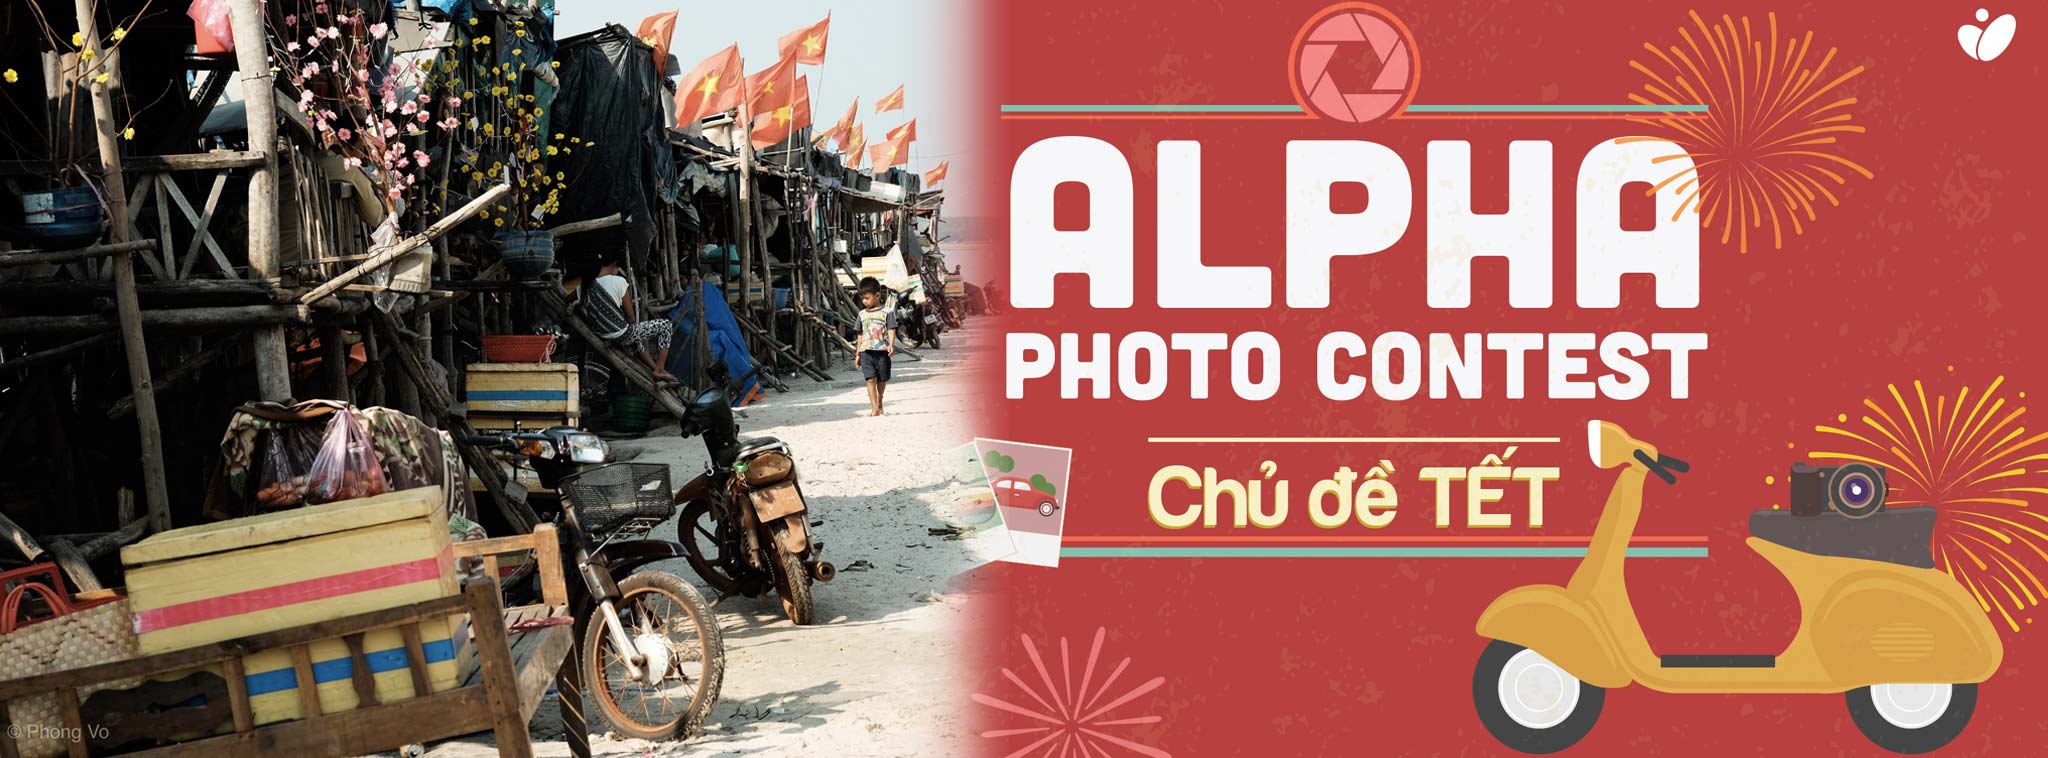 Photo of the Day (27/02): "Tết tại làng Tờ Dơ", cuộc thi ảnh Tết Alpha Photo Contest